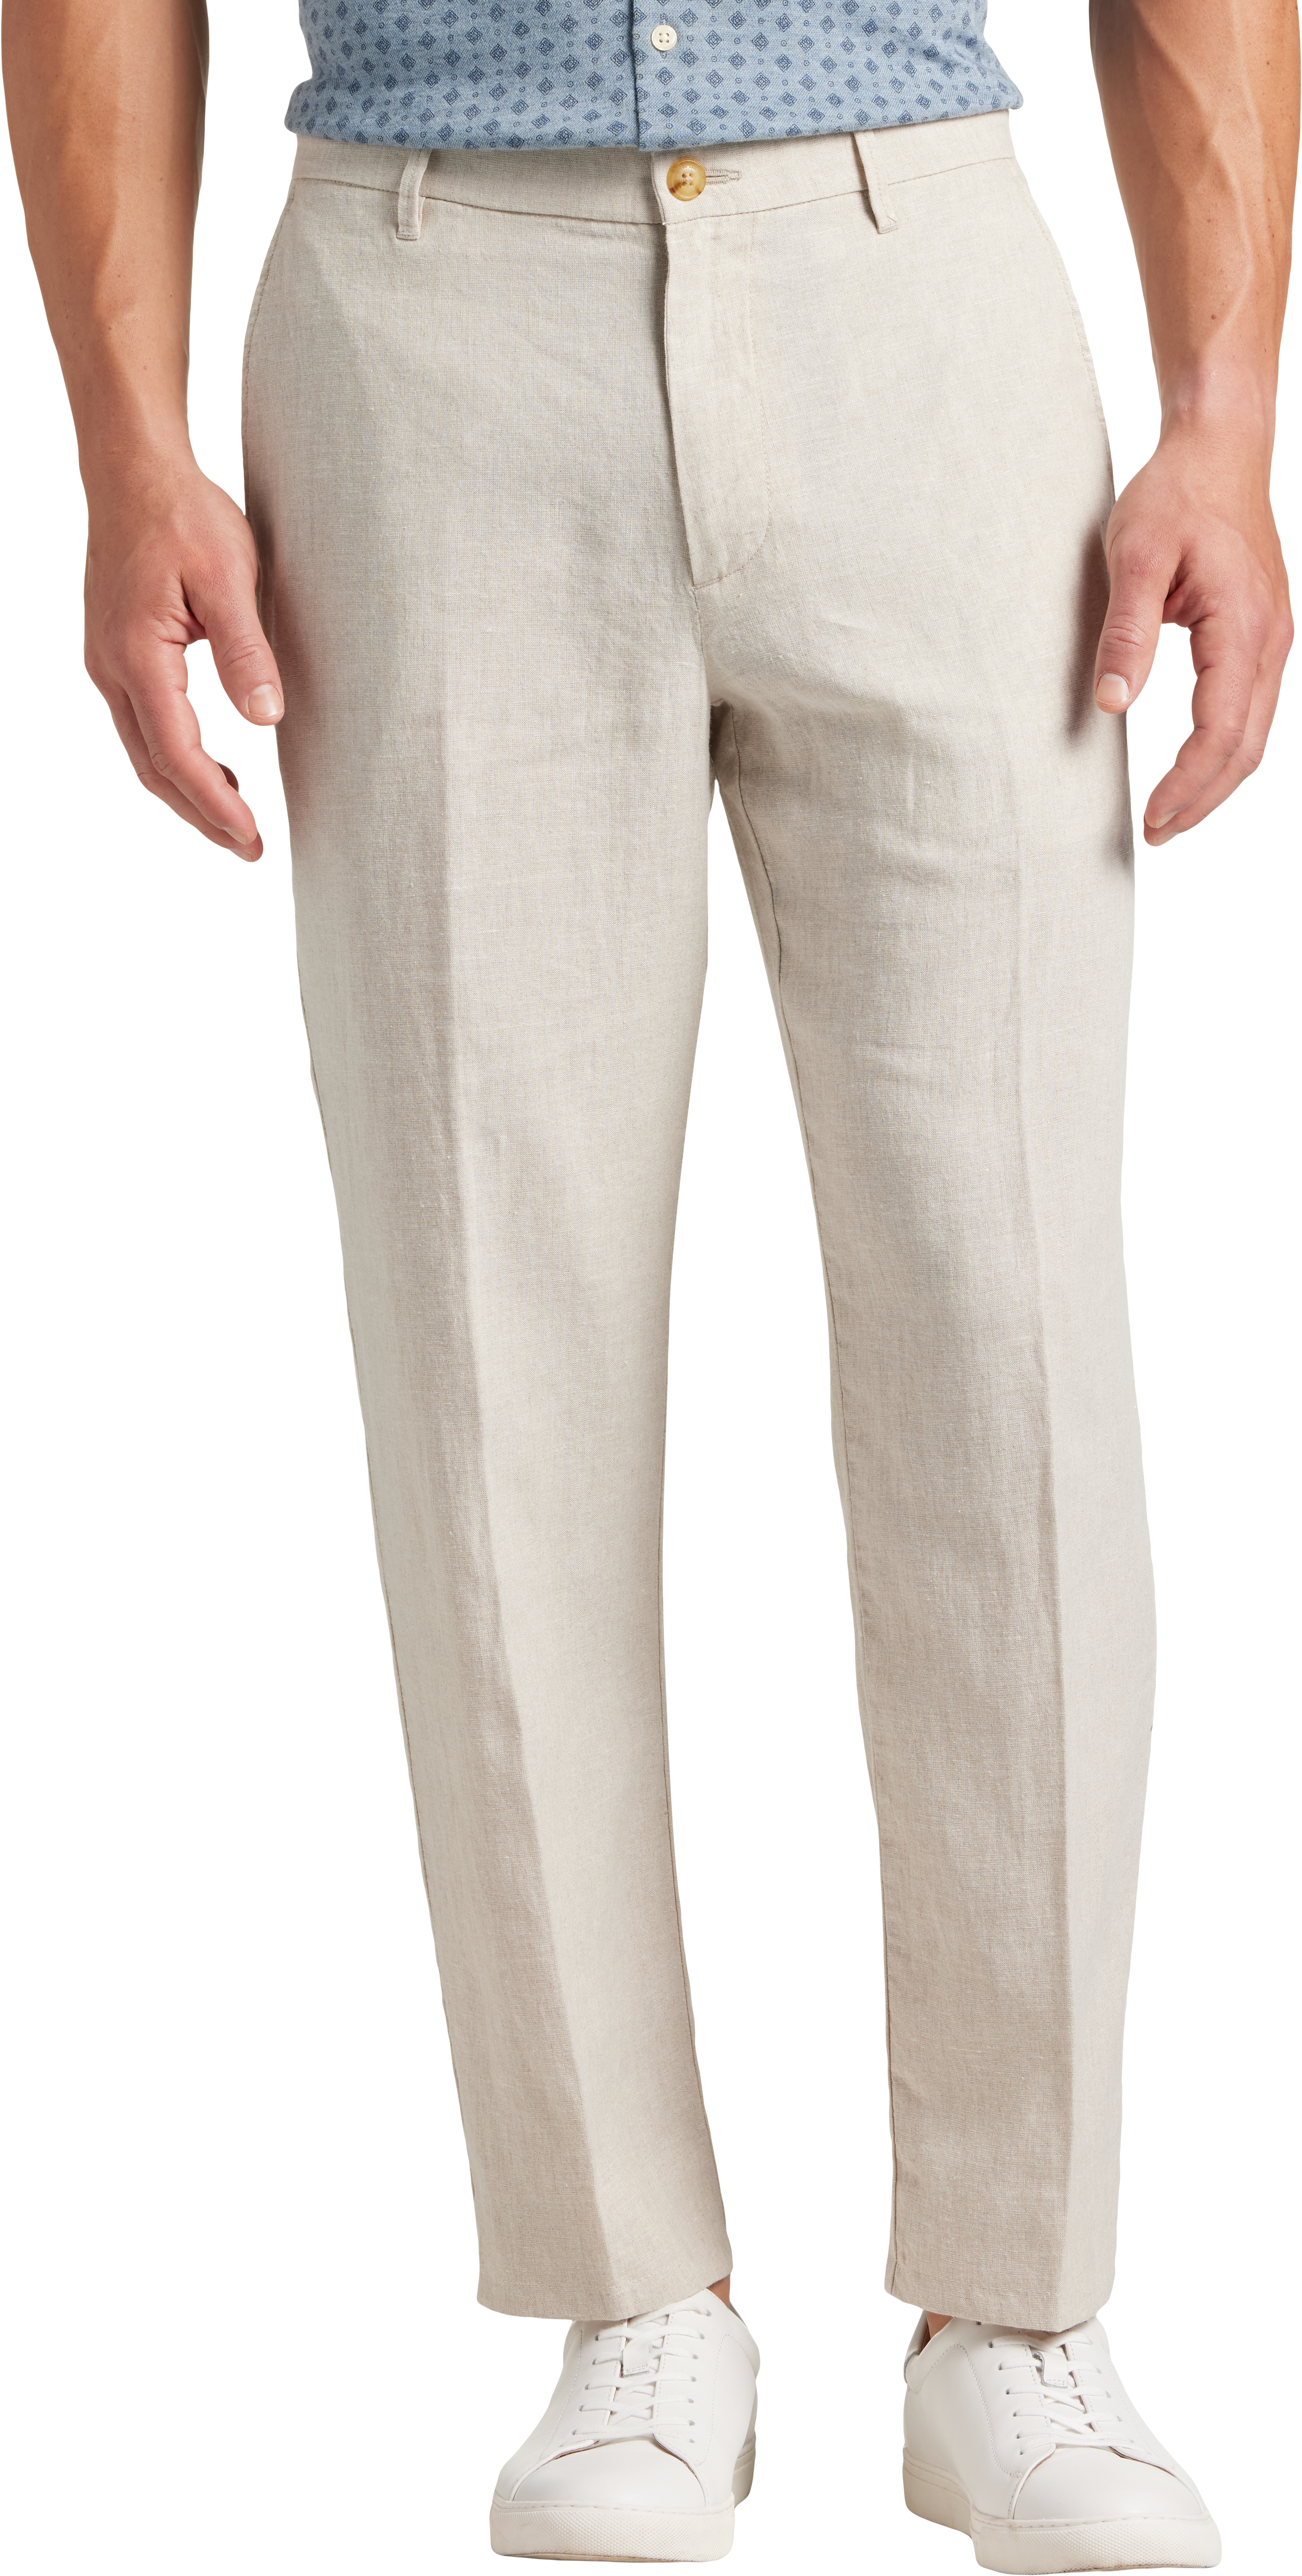 Joseph Abboud Modern Fit Linen-Blend Pants, Natural - Men's Pants | Men ...